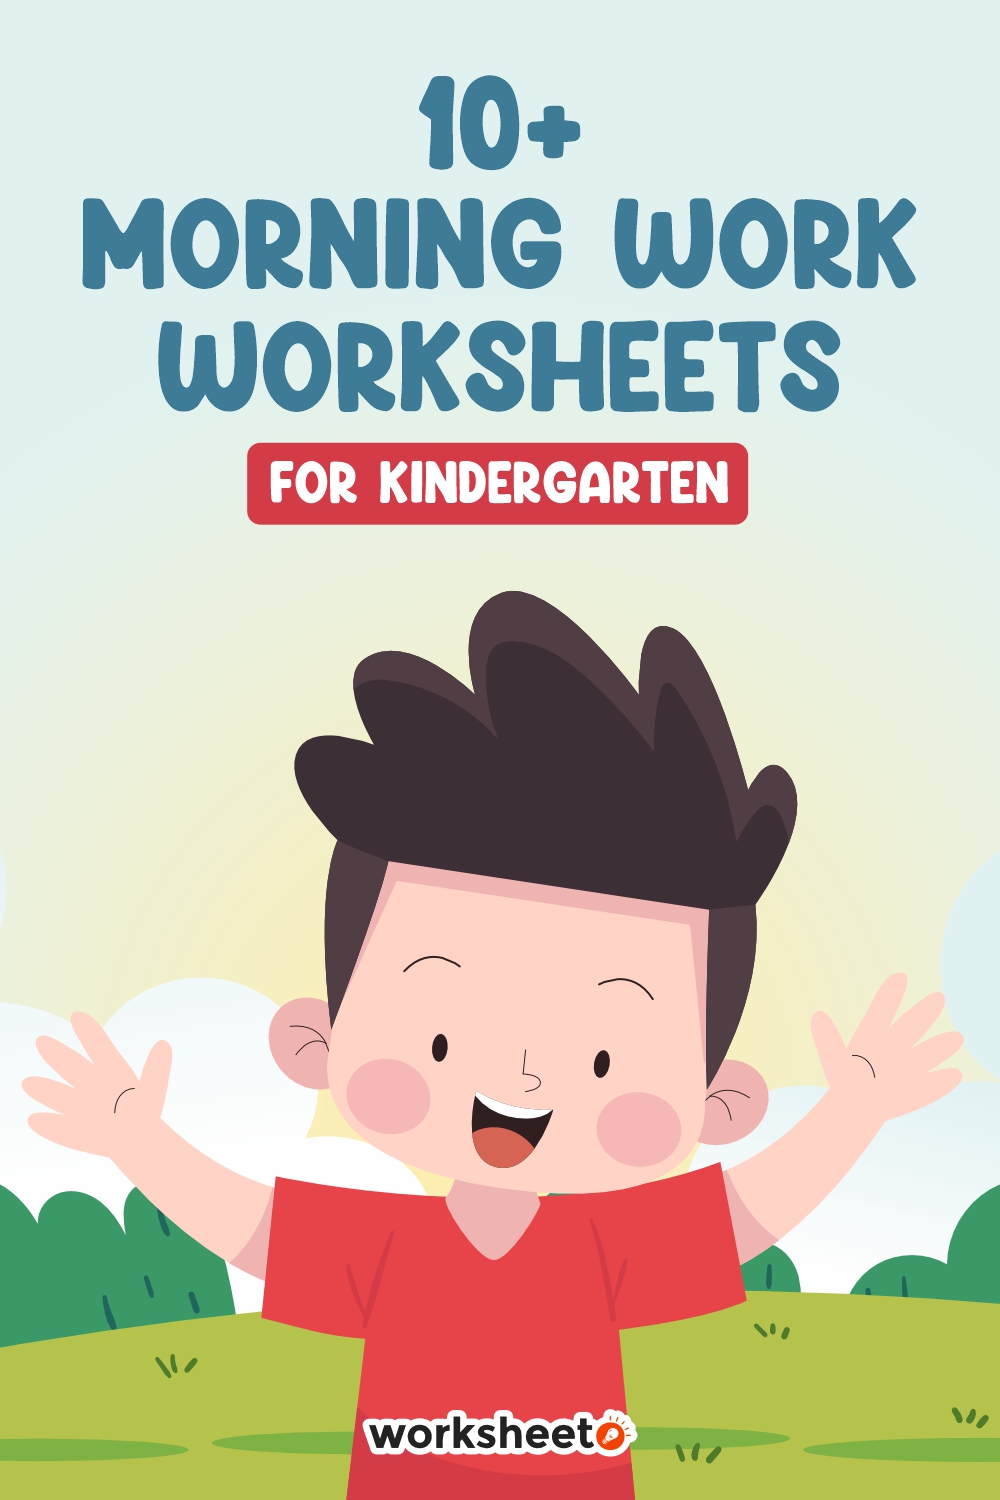 14 Images of Morning Work Worksheets For Kindergarten